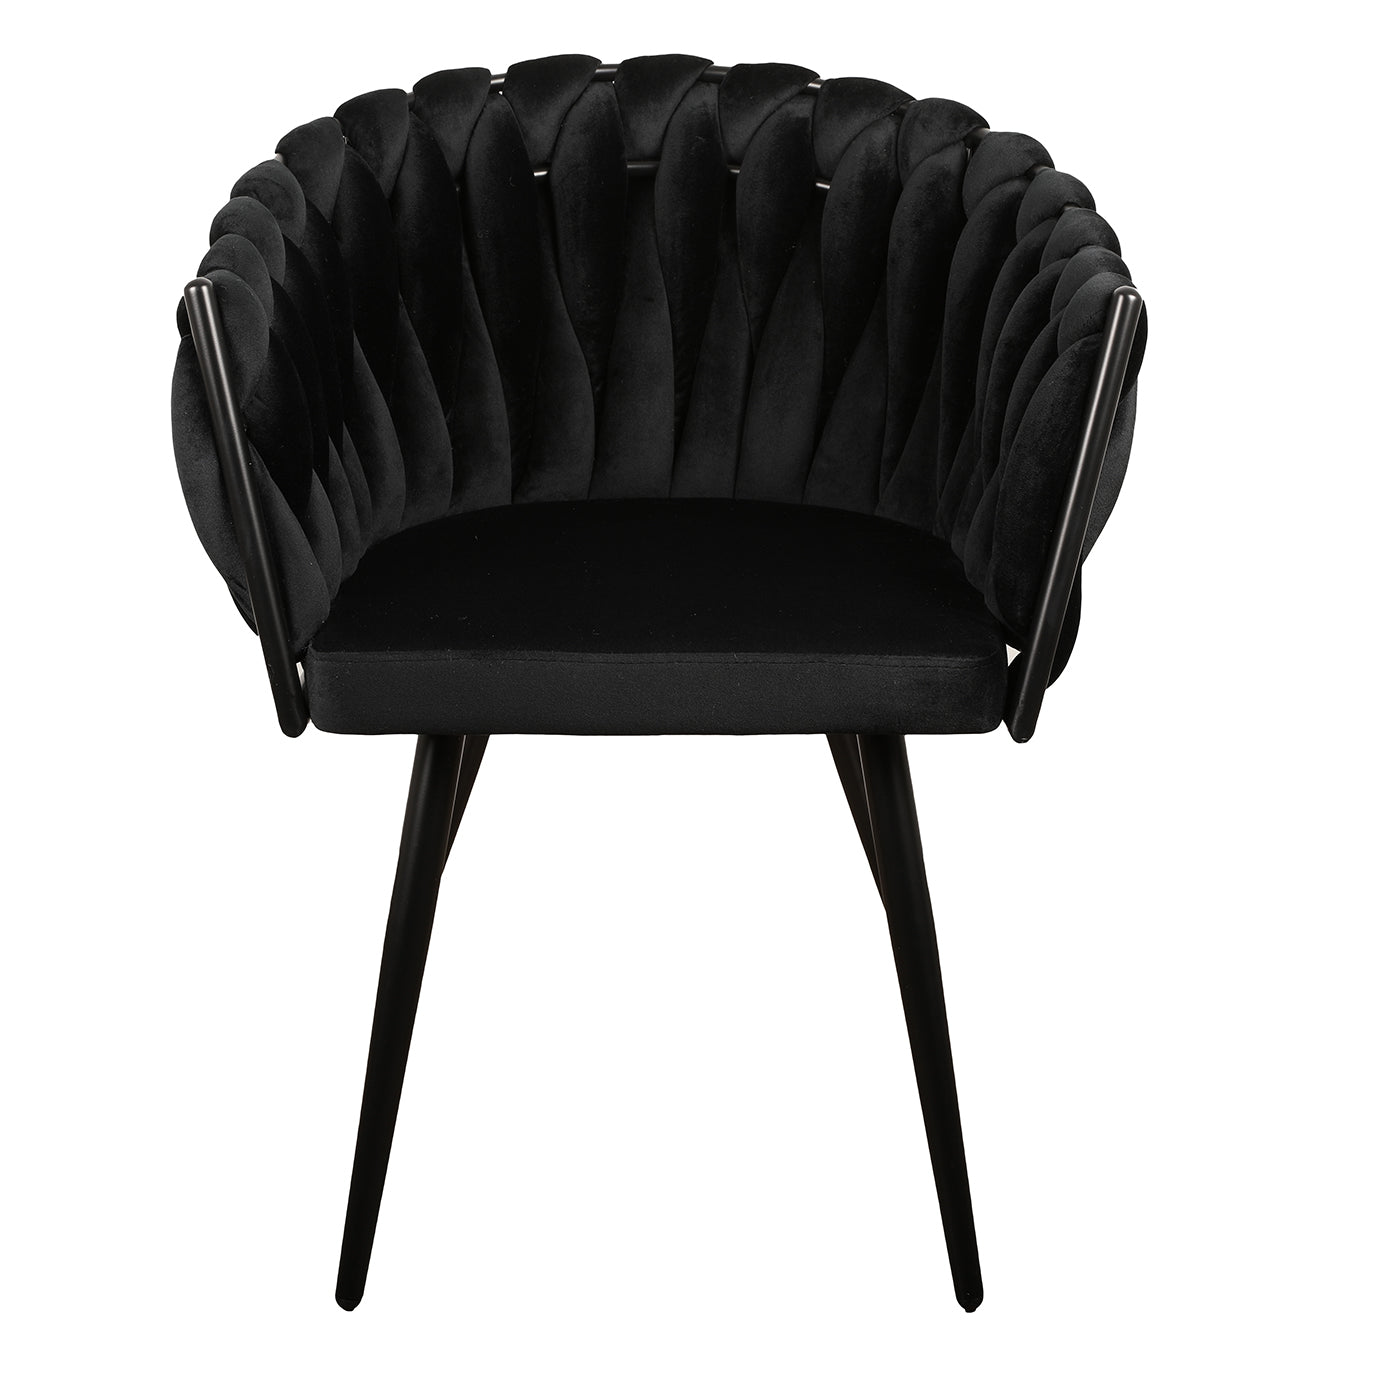 Eettafel stoel met armleuning Charles in zwart kleur van Thimalo voorkant